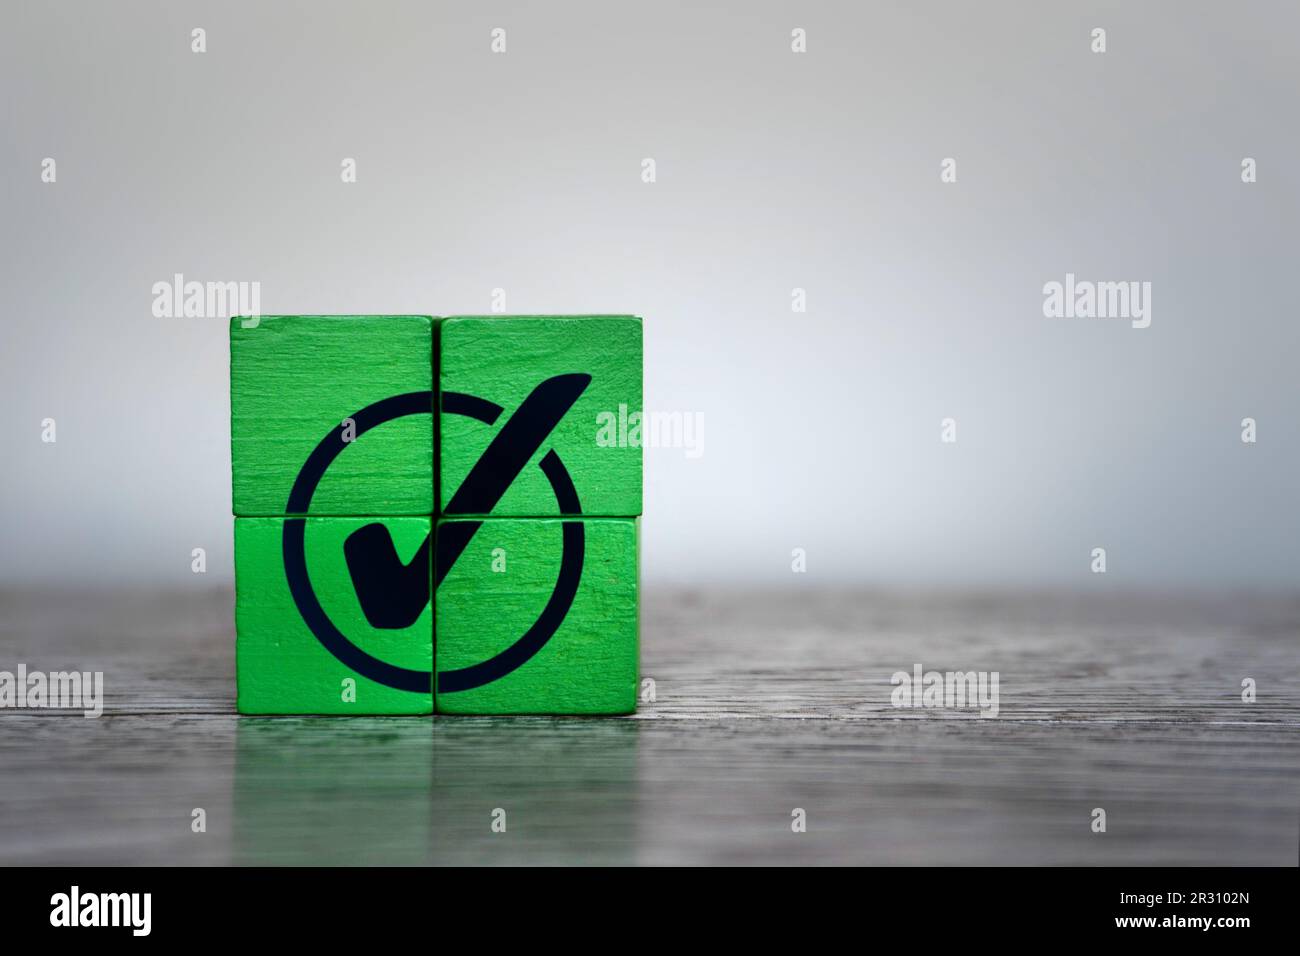 Cubi di legno verde con icona di segno di spunta. Conformità alle normative aziendali, risultati, attività completata Foto Stock